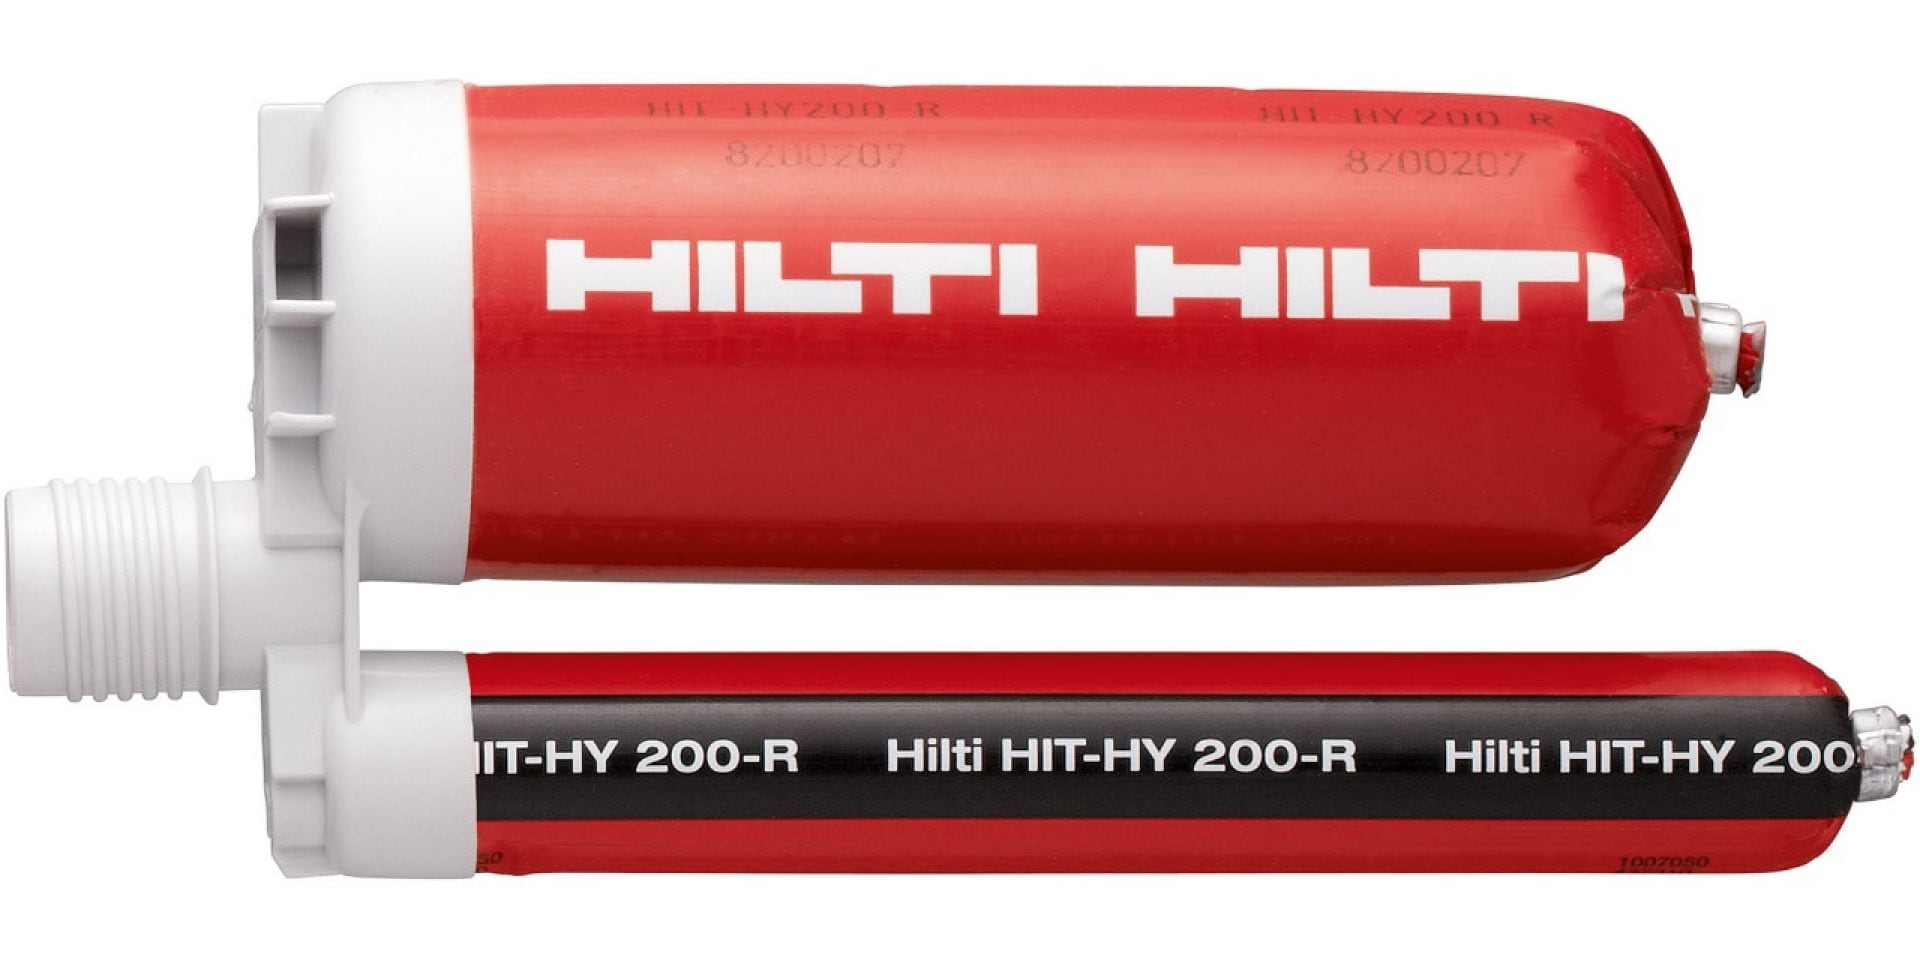 HIT-HY 200 hybrid mortar